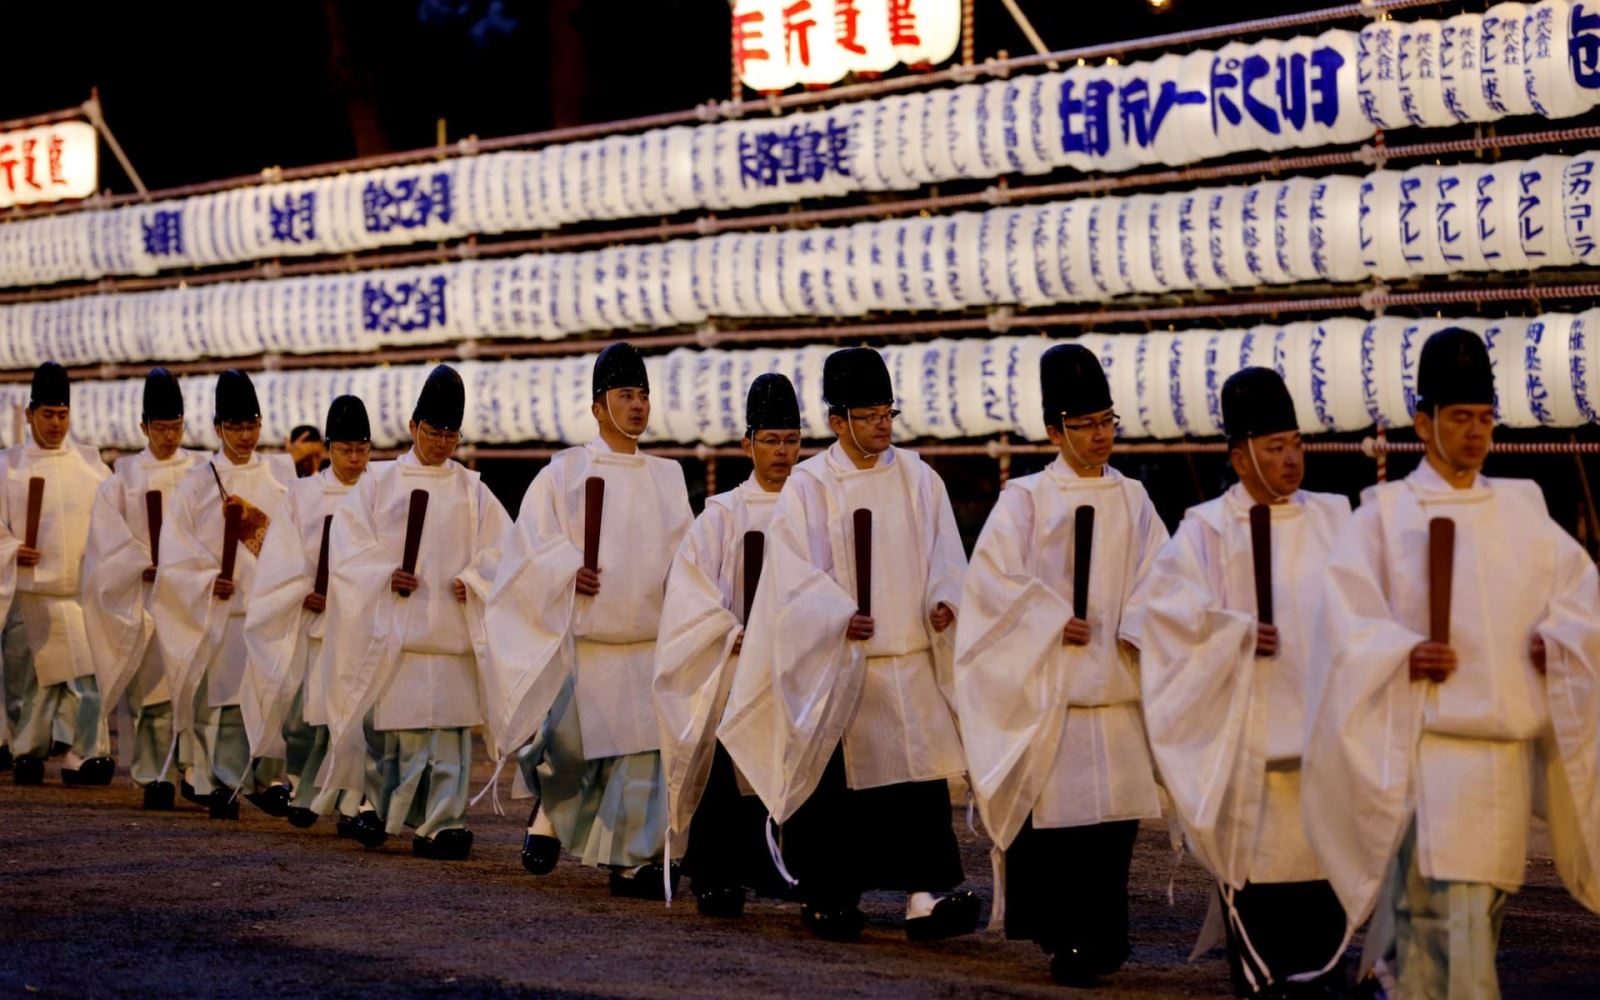 Cha sứ Thần đạo tham gia nghi lễ mừng năm mới ngoài miếu Meiji, Tokyo (Nhật Bản). Ảnh: Reuters